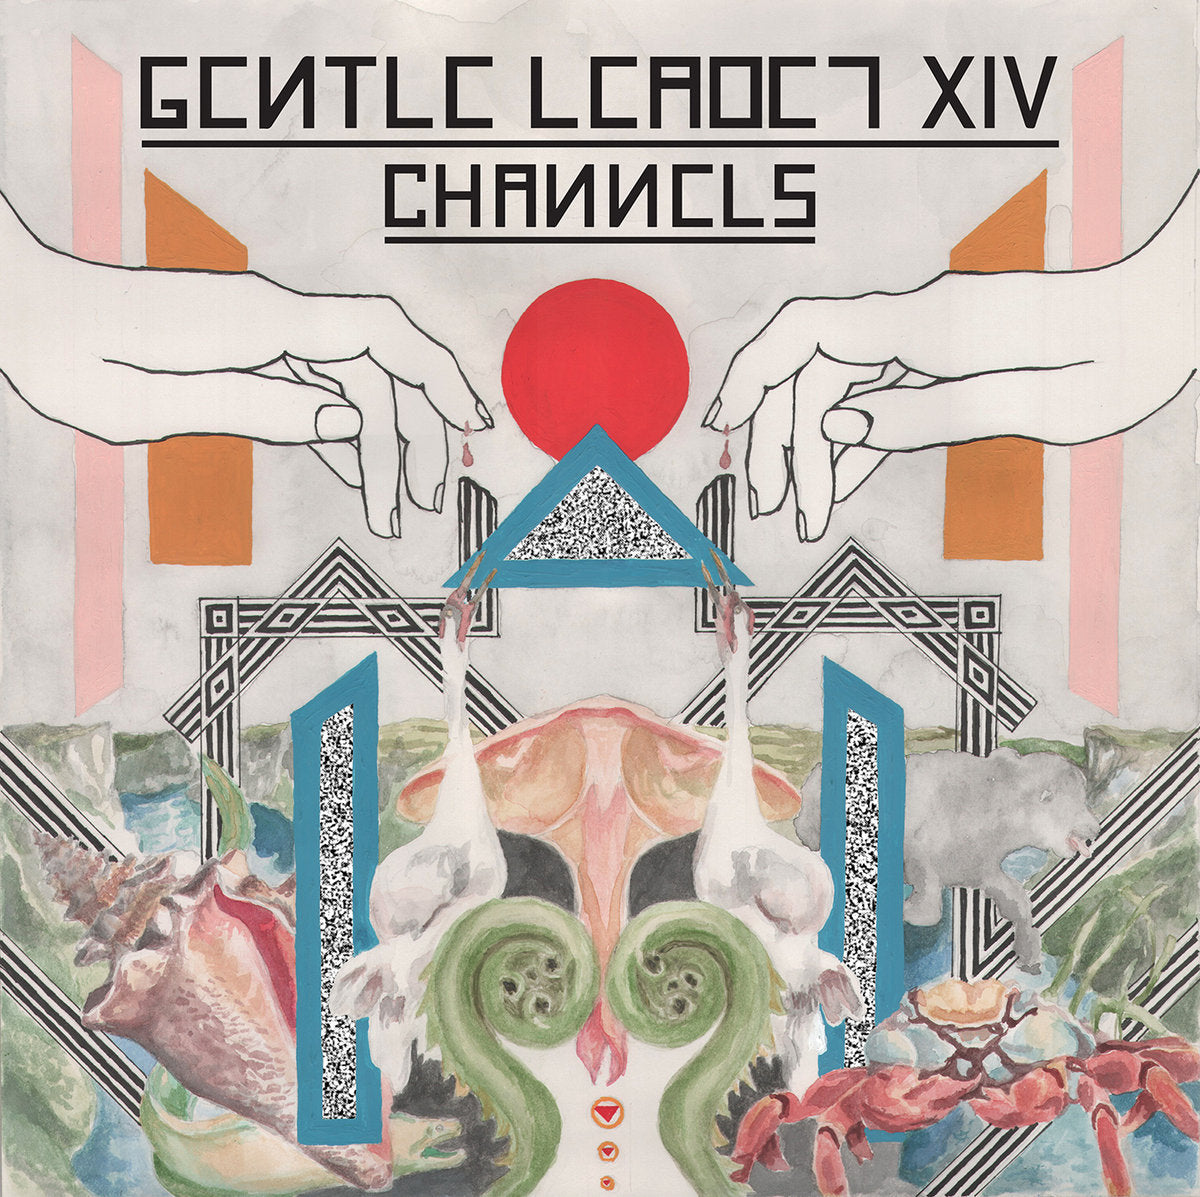 Channels (New LP)